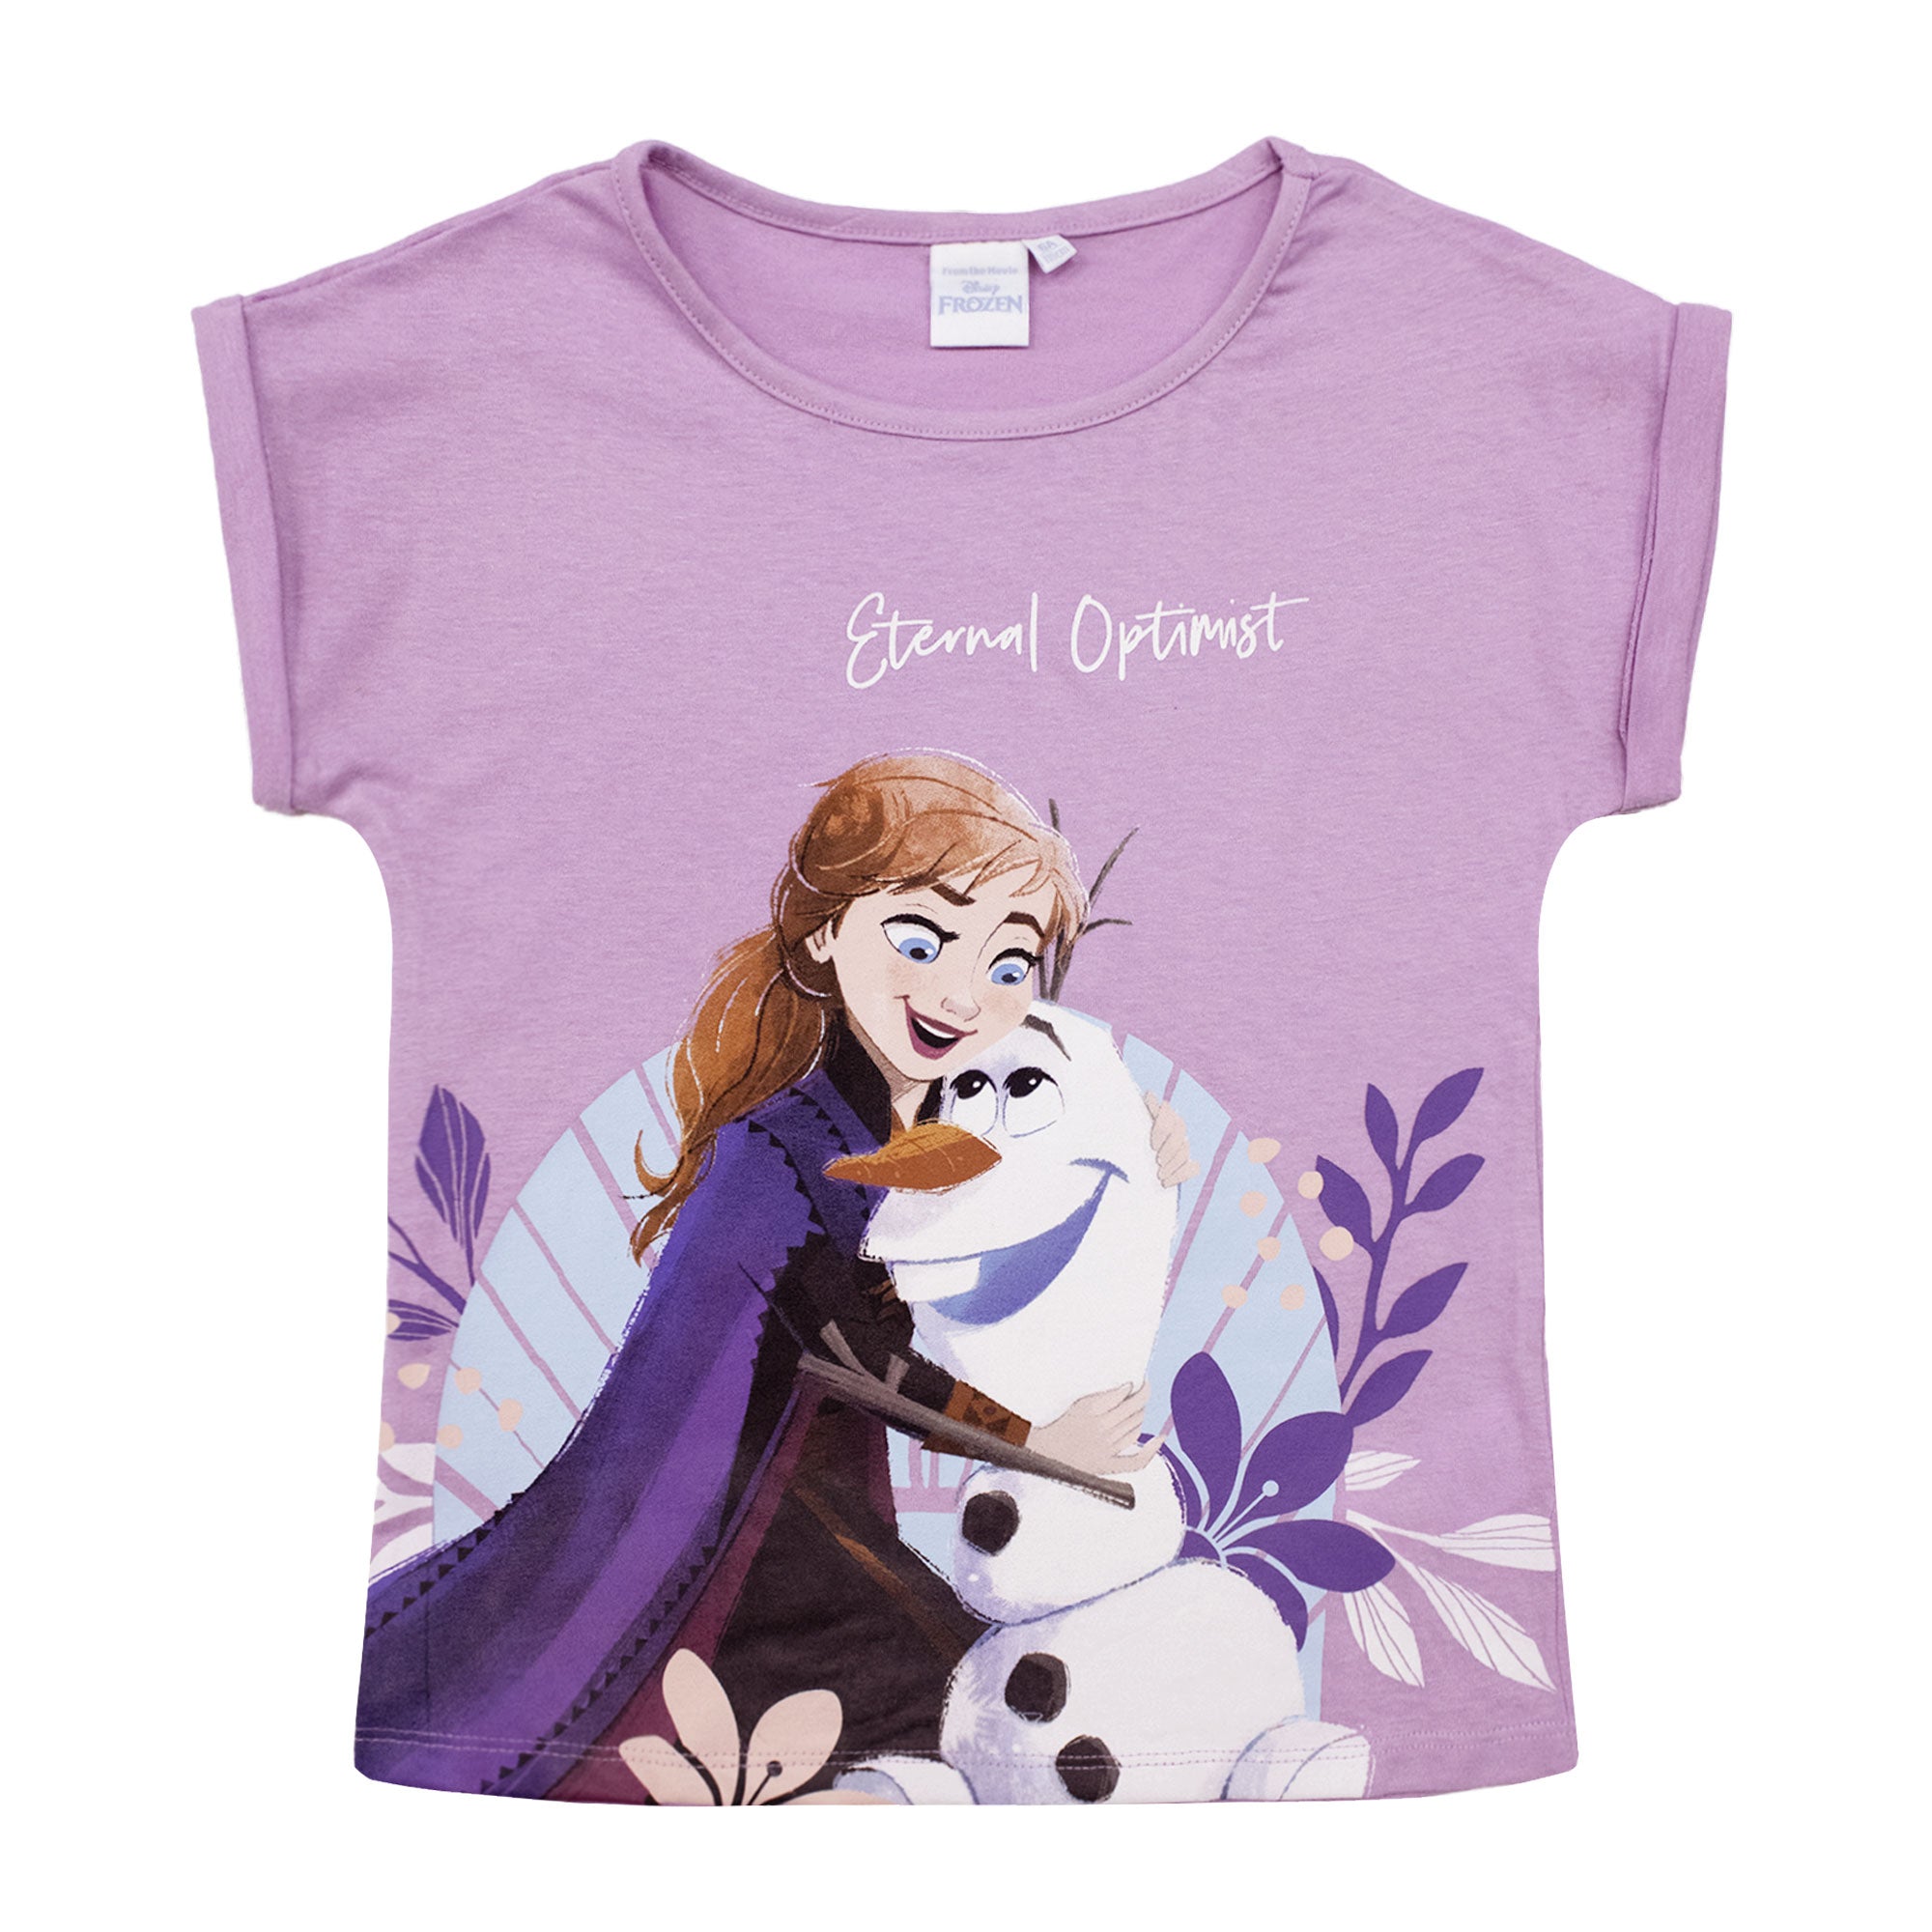 T-shirt Disney Frozen Elsa Olaf maglia maniche corte bambina in cotone 6789